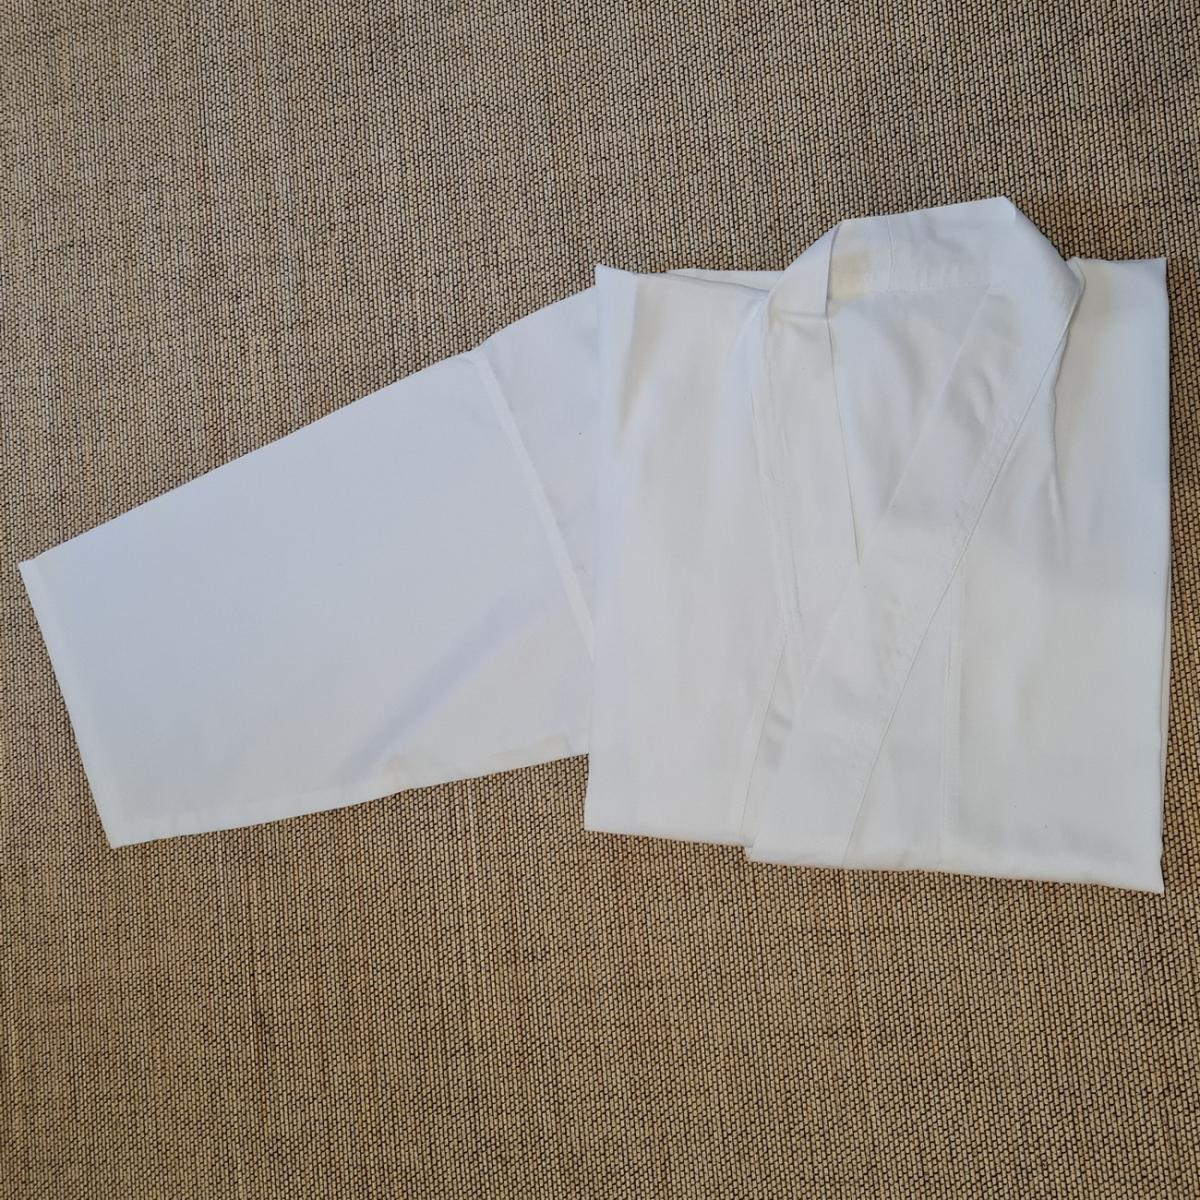 Gi aus Baumwolle - Stofffarbe weiß - Größe 190 cm ➤ www.bokken-shop.de. Gi passend für Iaido, Aikdo, Kendo, Jodo. Dein Budo-Fachhändler!